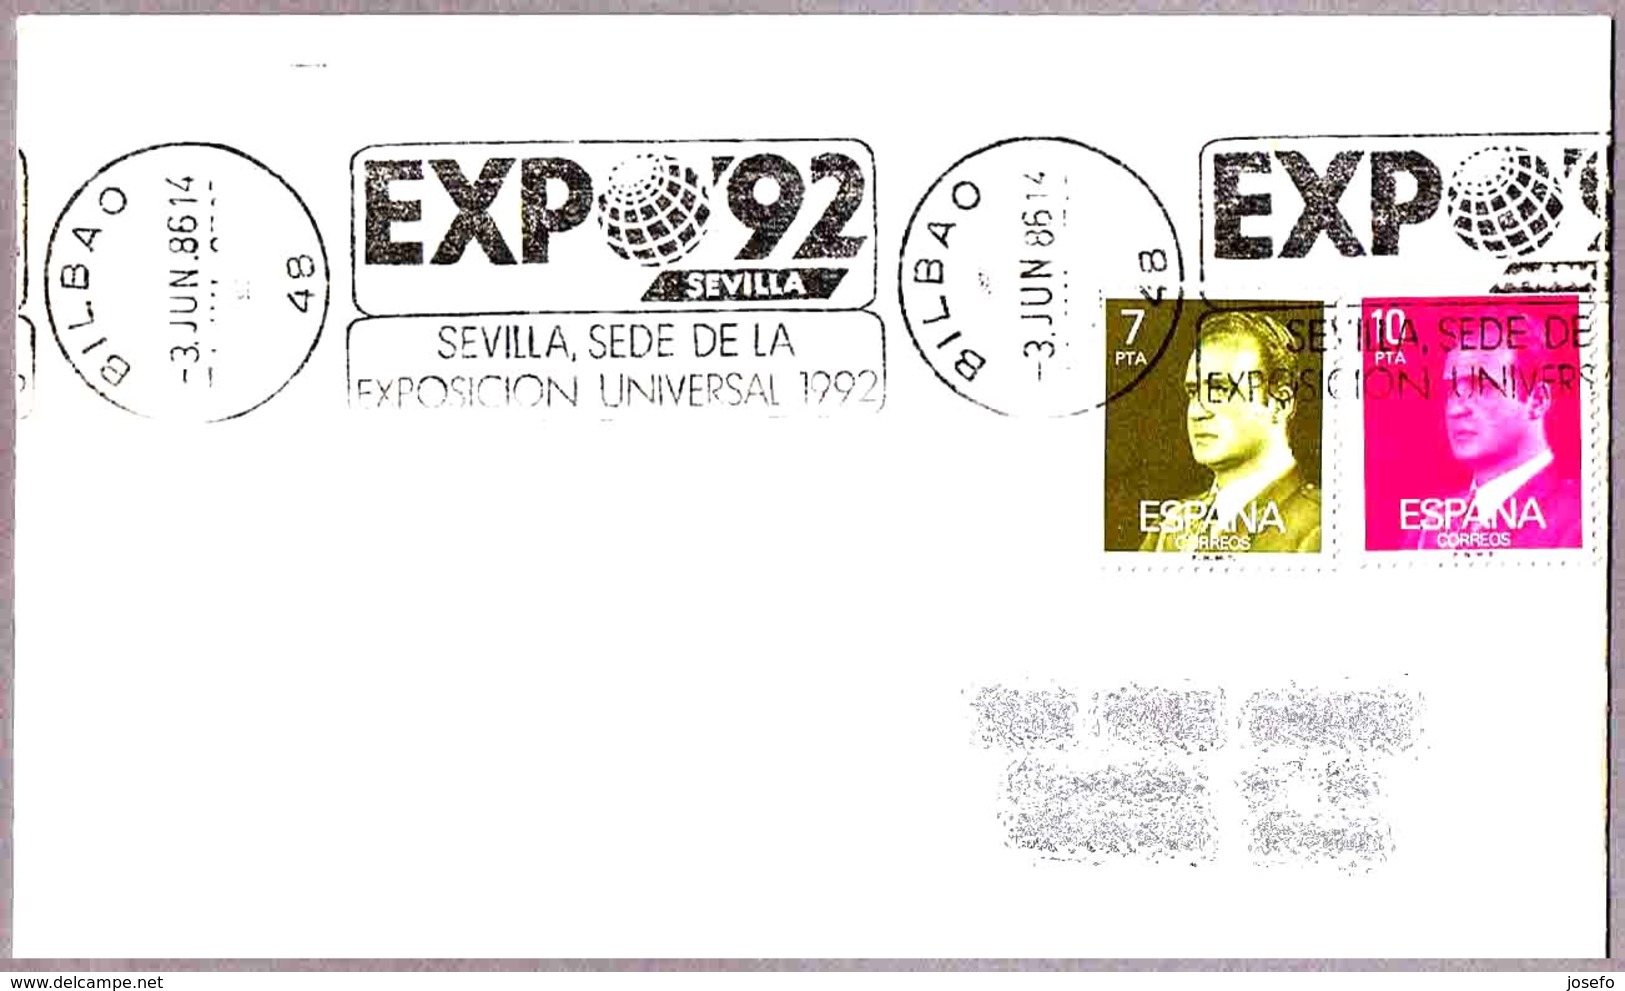 EXPO'92 - SEVILLA. Bilbao 1986 - 1992 – Siviglia (Spagna)